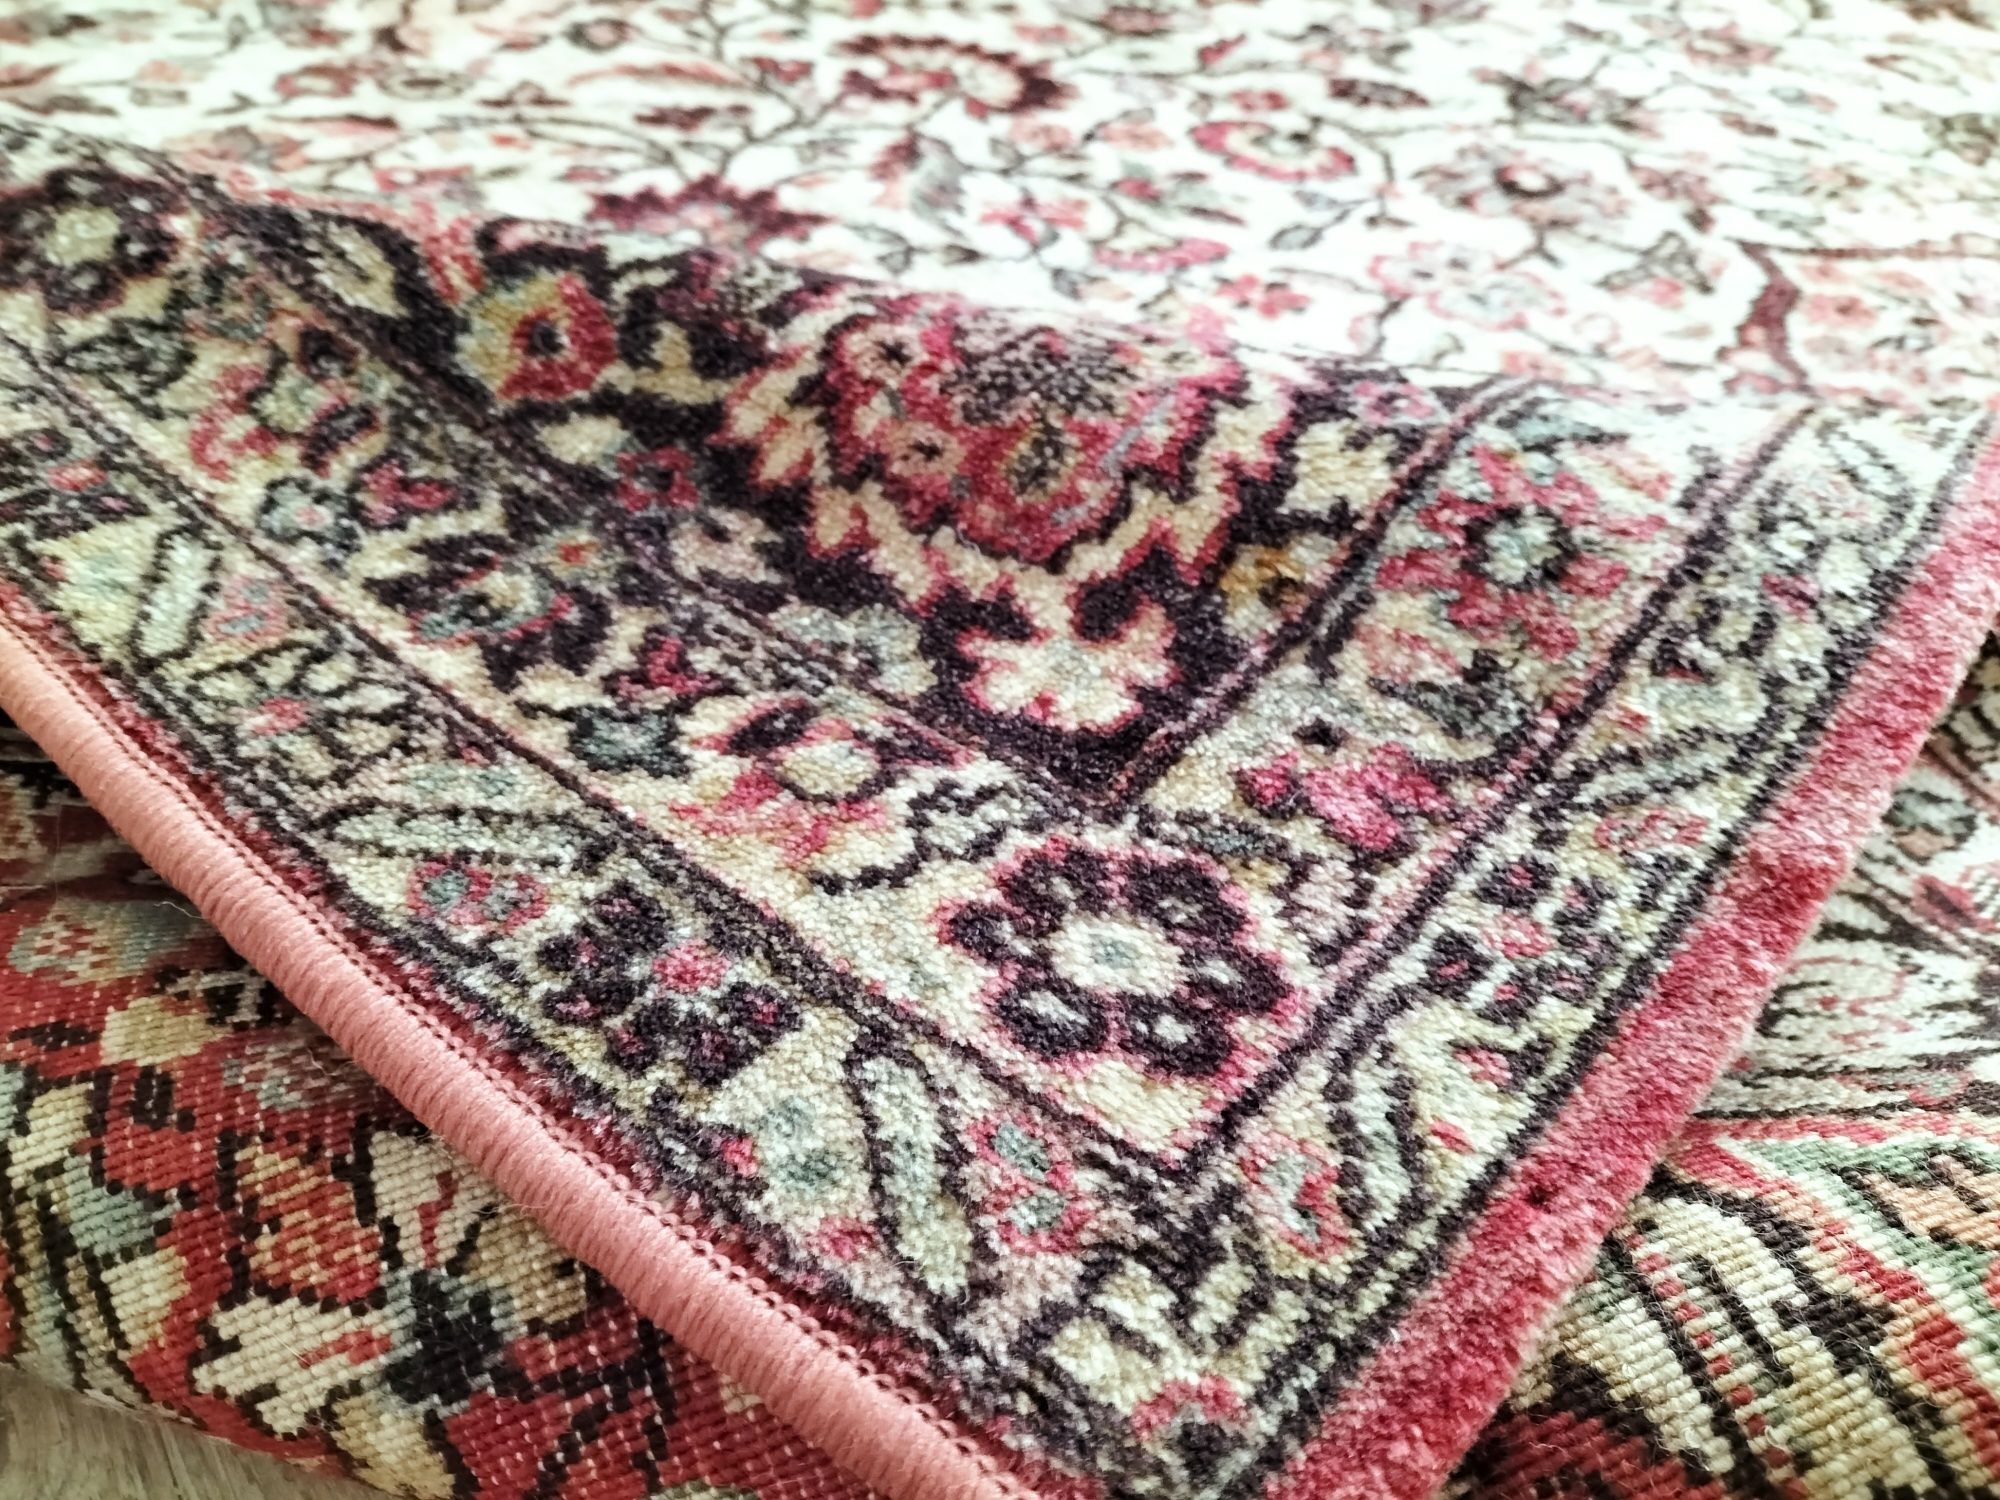 Piękny wełniany orientalny dywan perski wzór 240x340cm